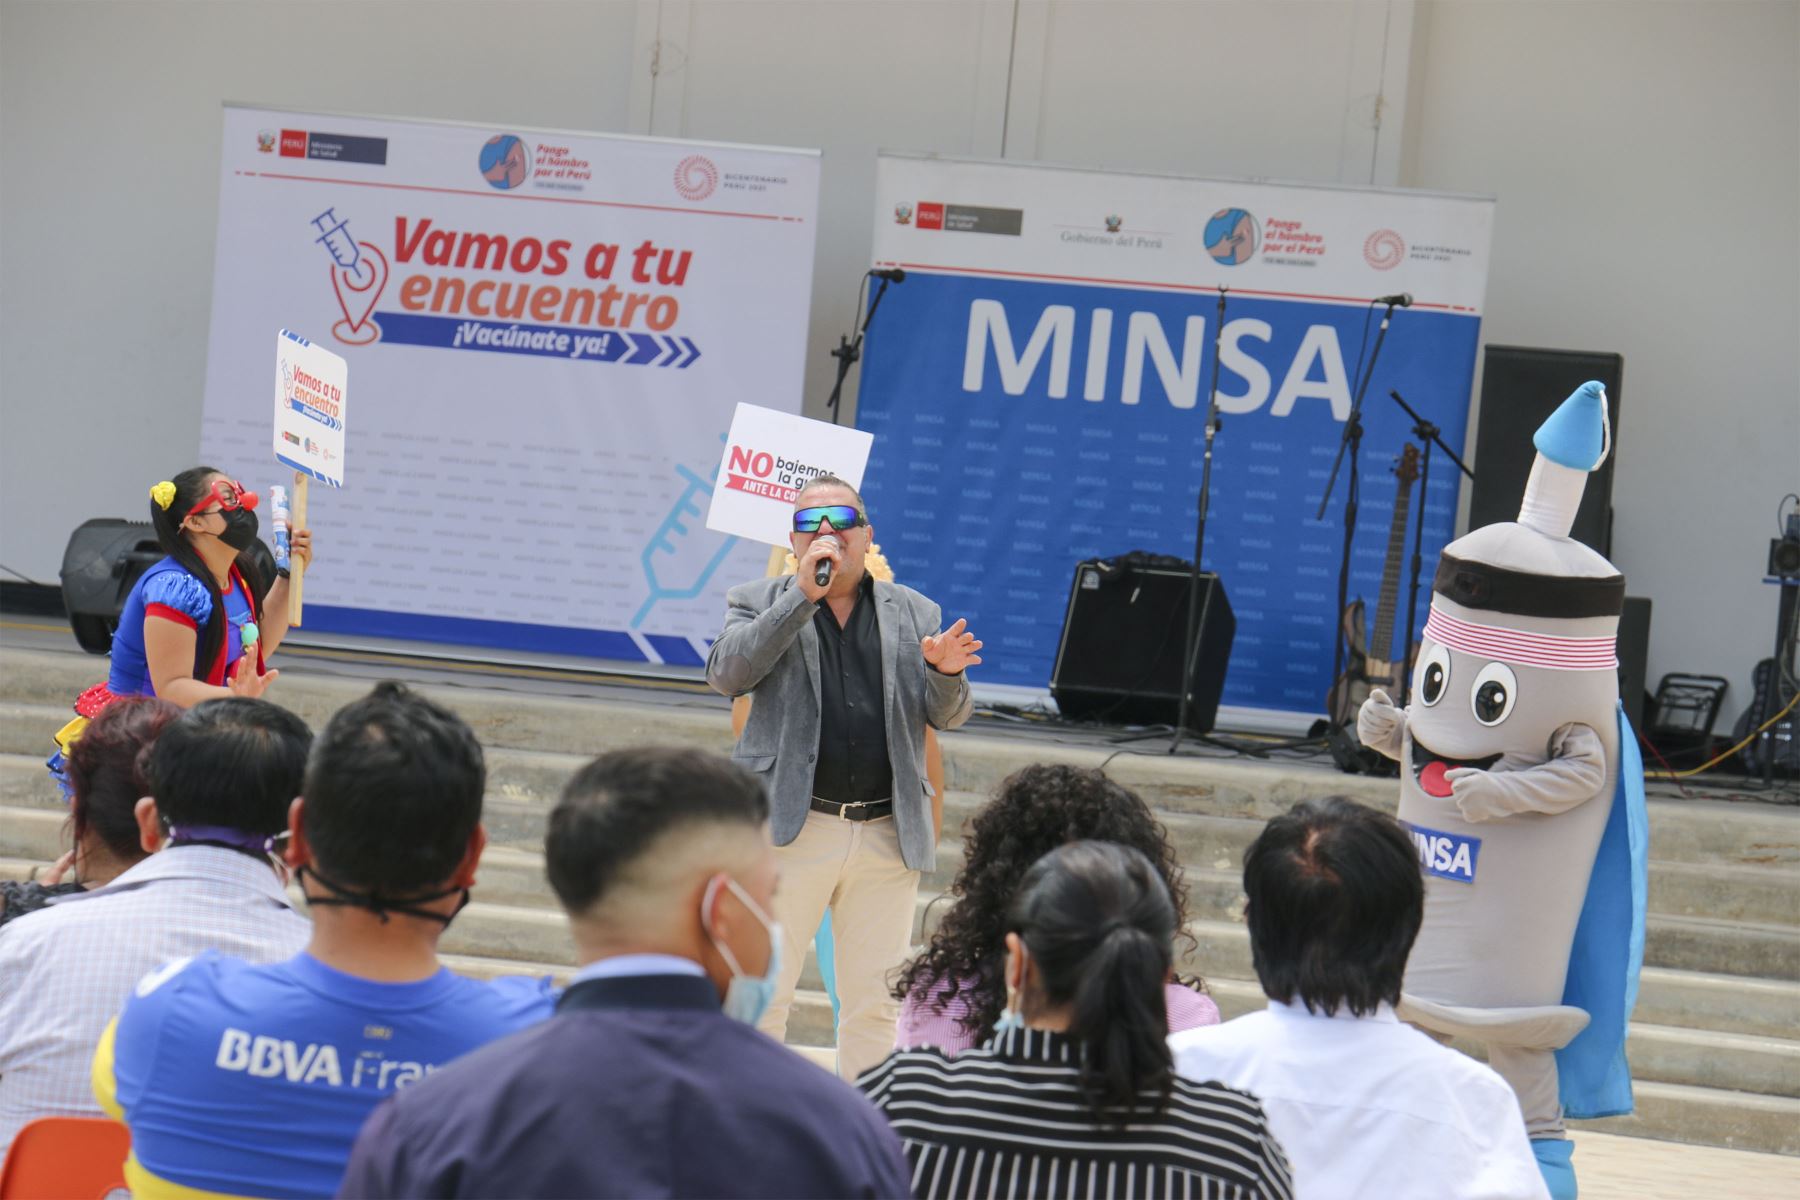 Ministerio de Salud organiza el  Festival VacunaRock en San Marcos, que tiene como objetivo incentivar y promover la vacuna a traves de diversas actividades artísticas.
Foto: Minsa